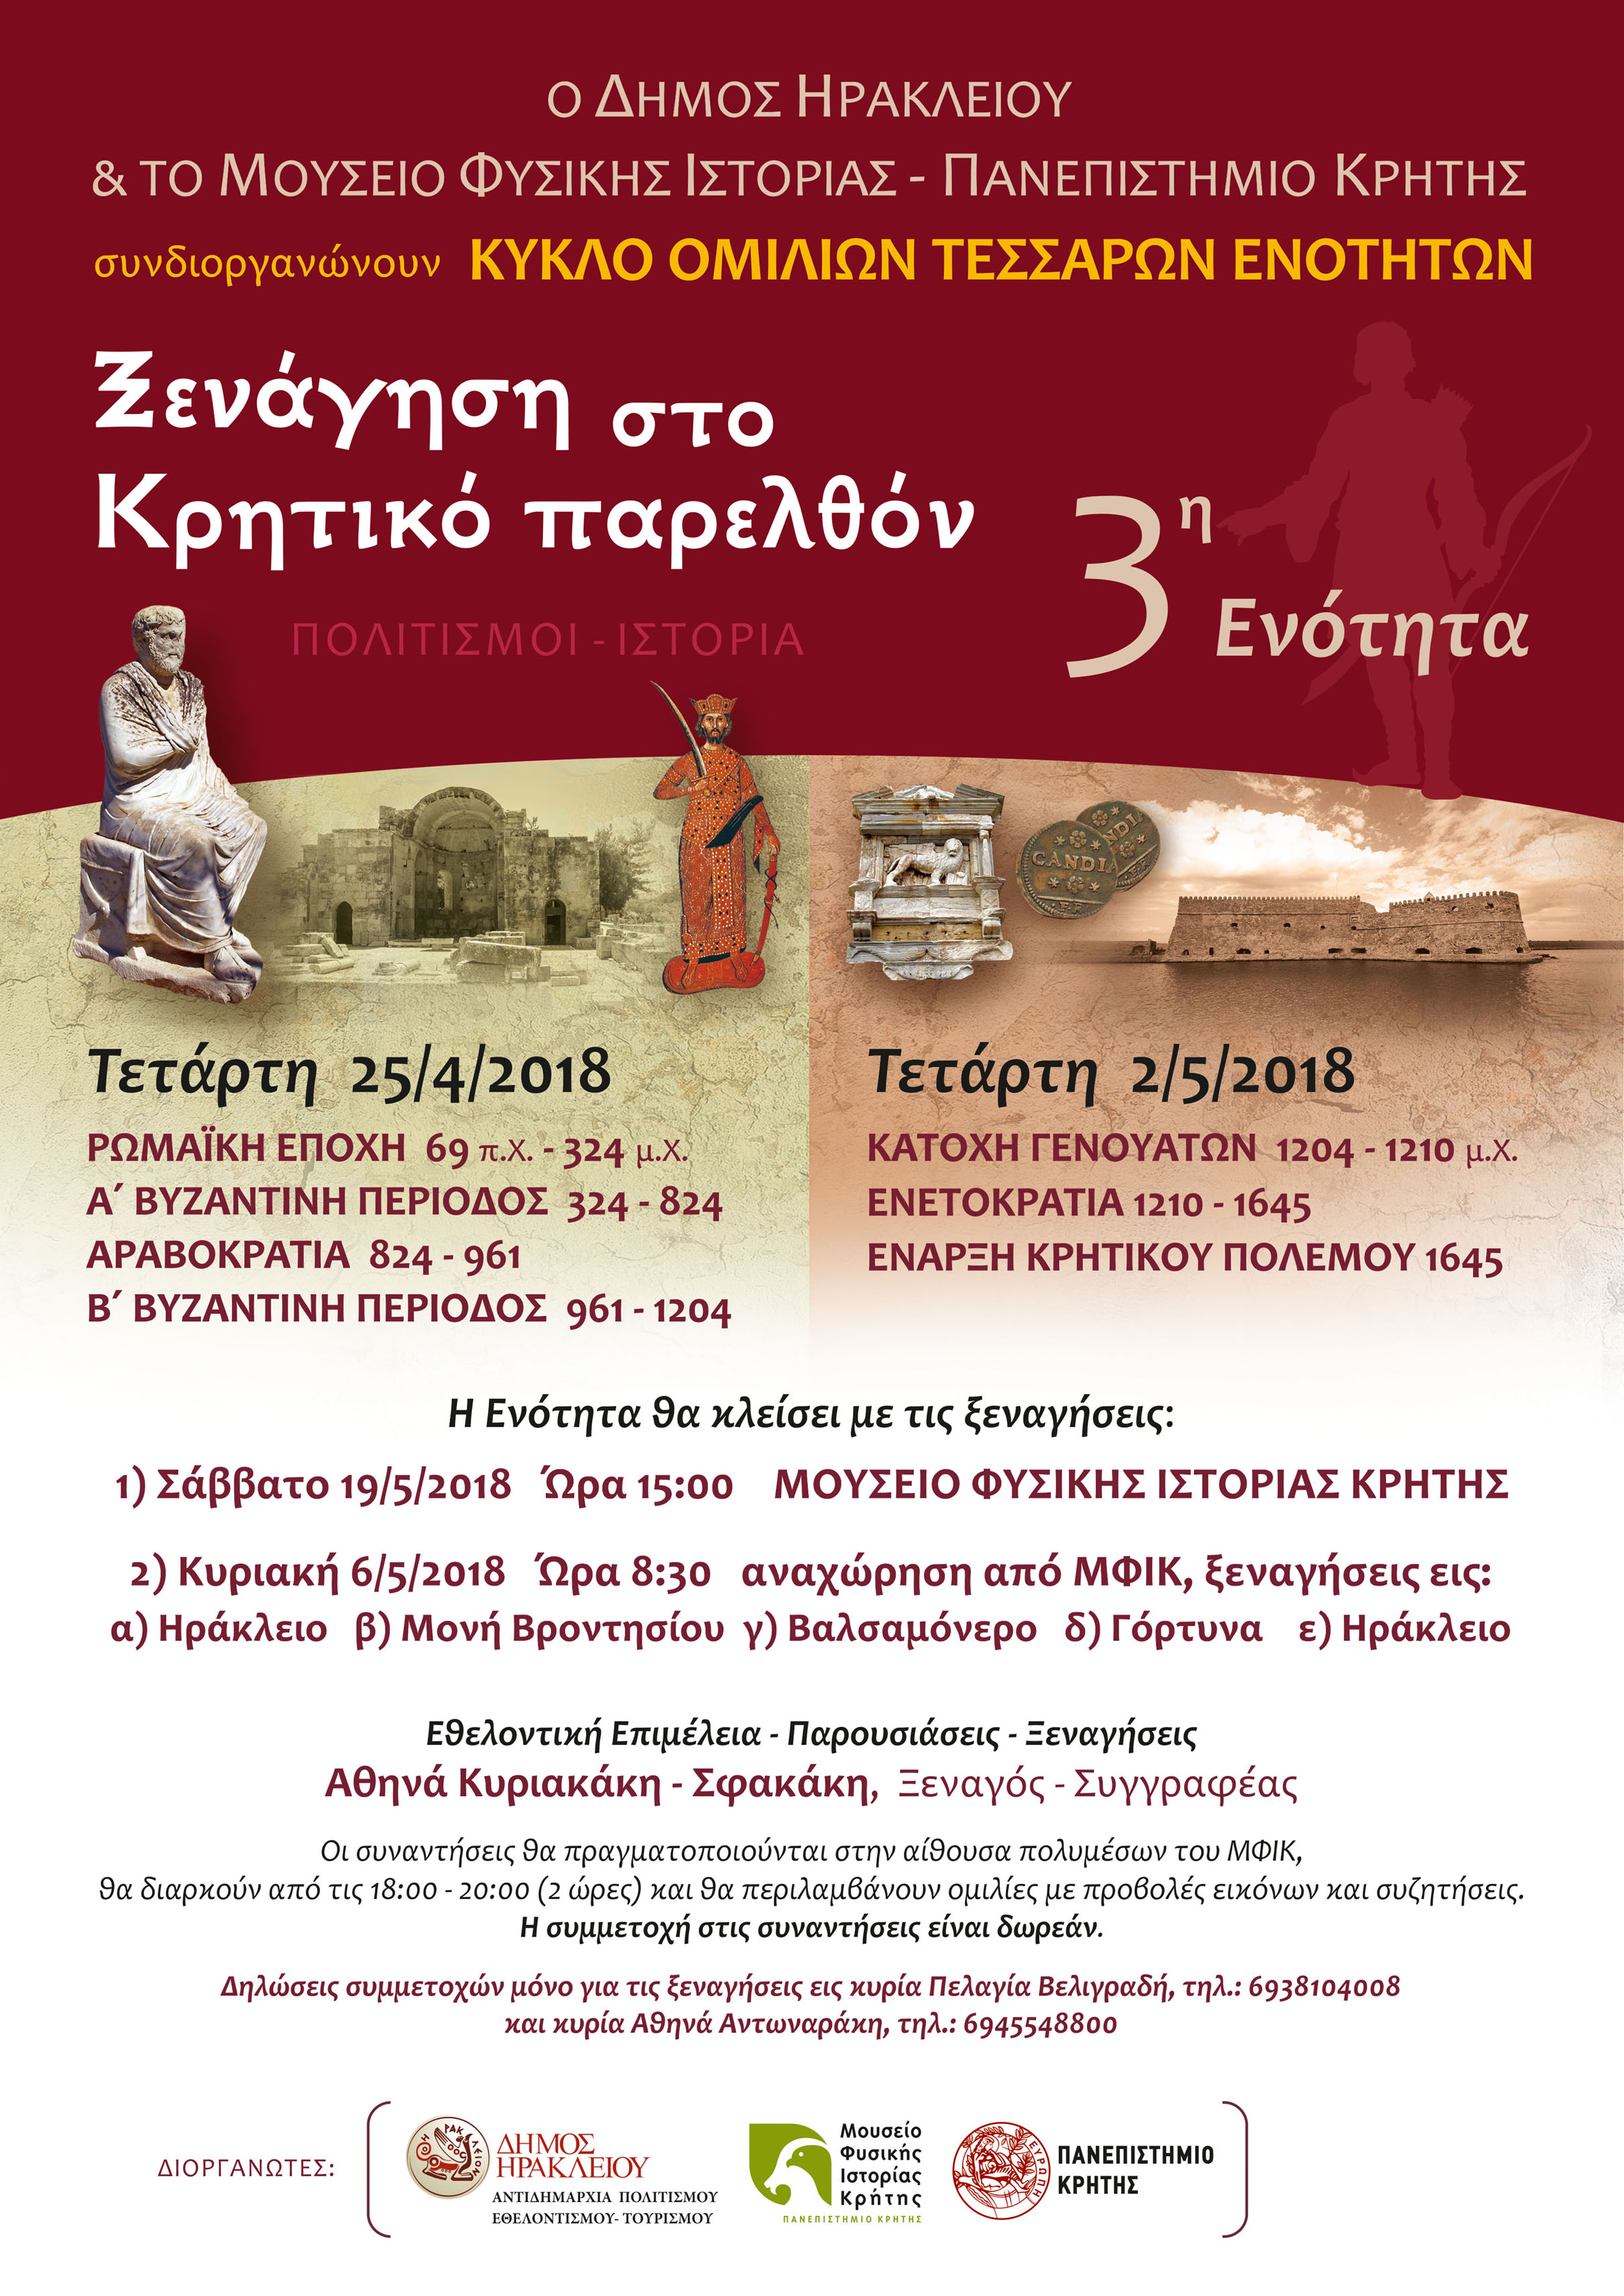 Μουσείο Φυσικής Ιστορίας Κρήτης : «Ξενάγηση στο Κρητικό Παρελθόν, Πολιτισμοί – Ιστορία»